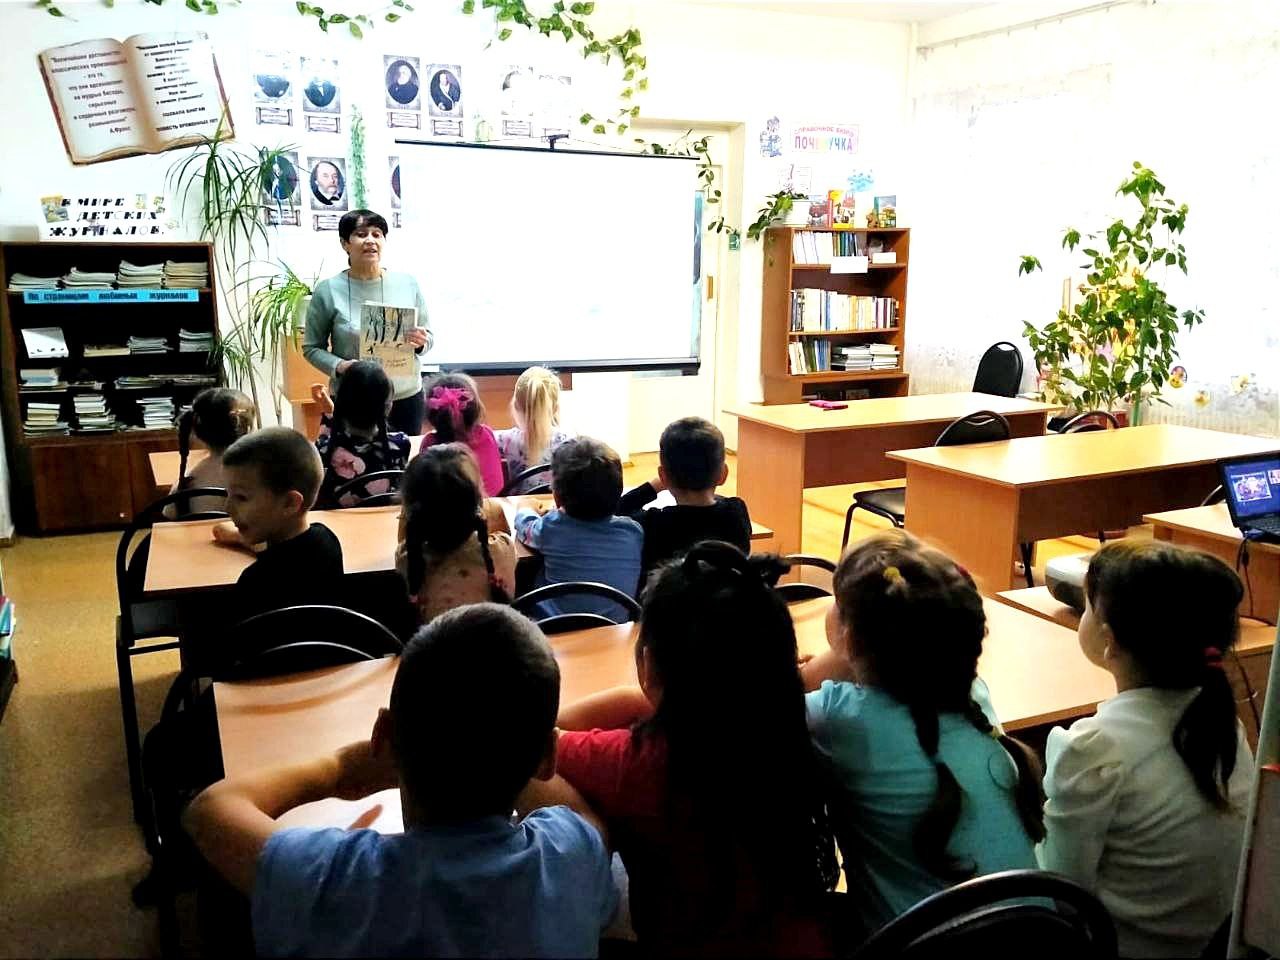 В Любимовской  библиотеке для воспитанников детского сада "Василёк" прошёл литературно-игровой час "Зимняя книга"